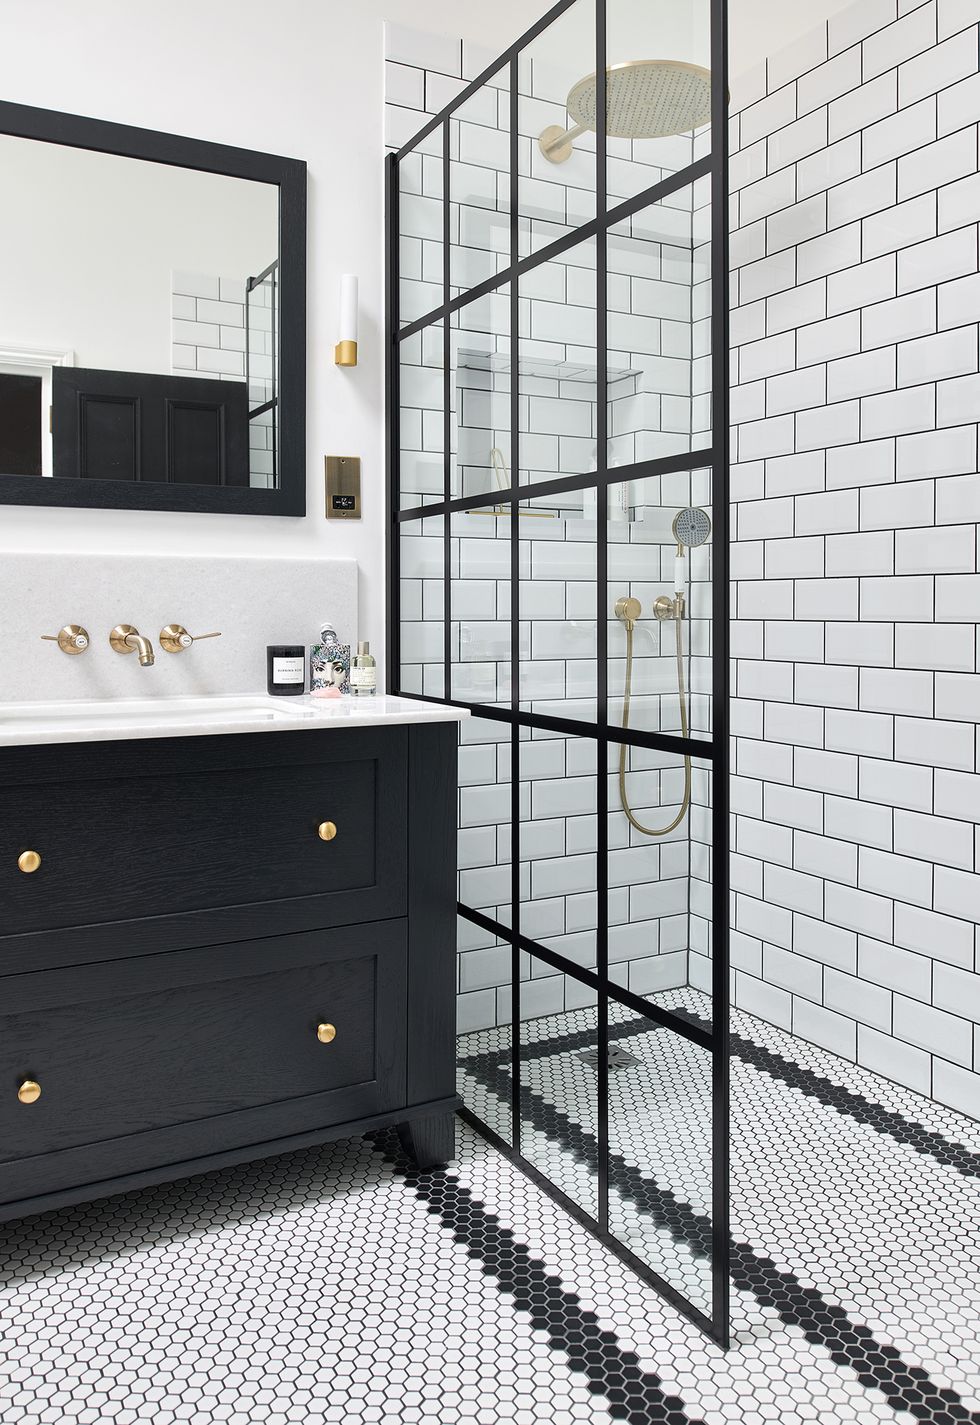 ducha de obra con mampara de estilo francés y azulejos tipo metro en color blanco